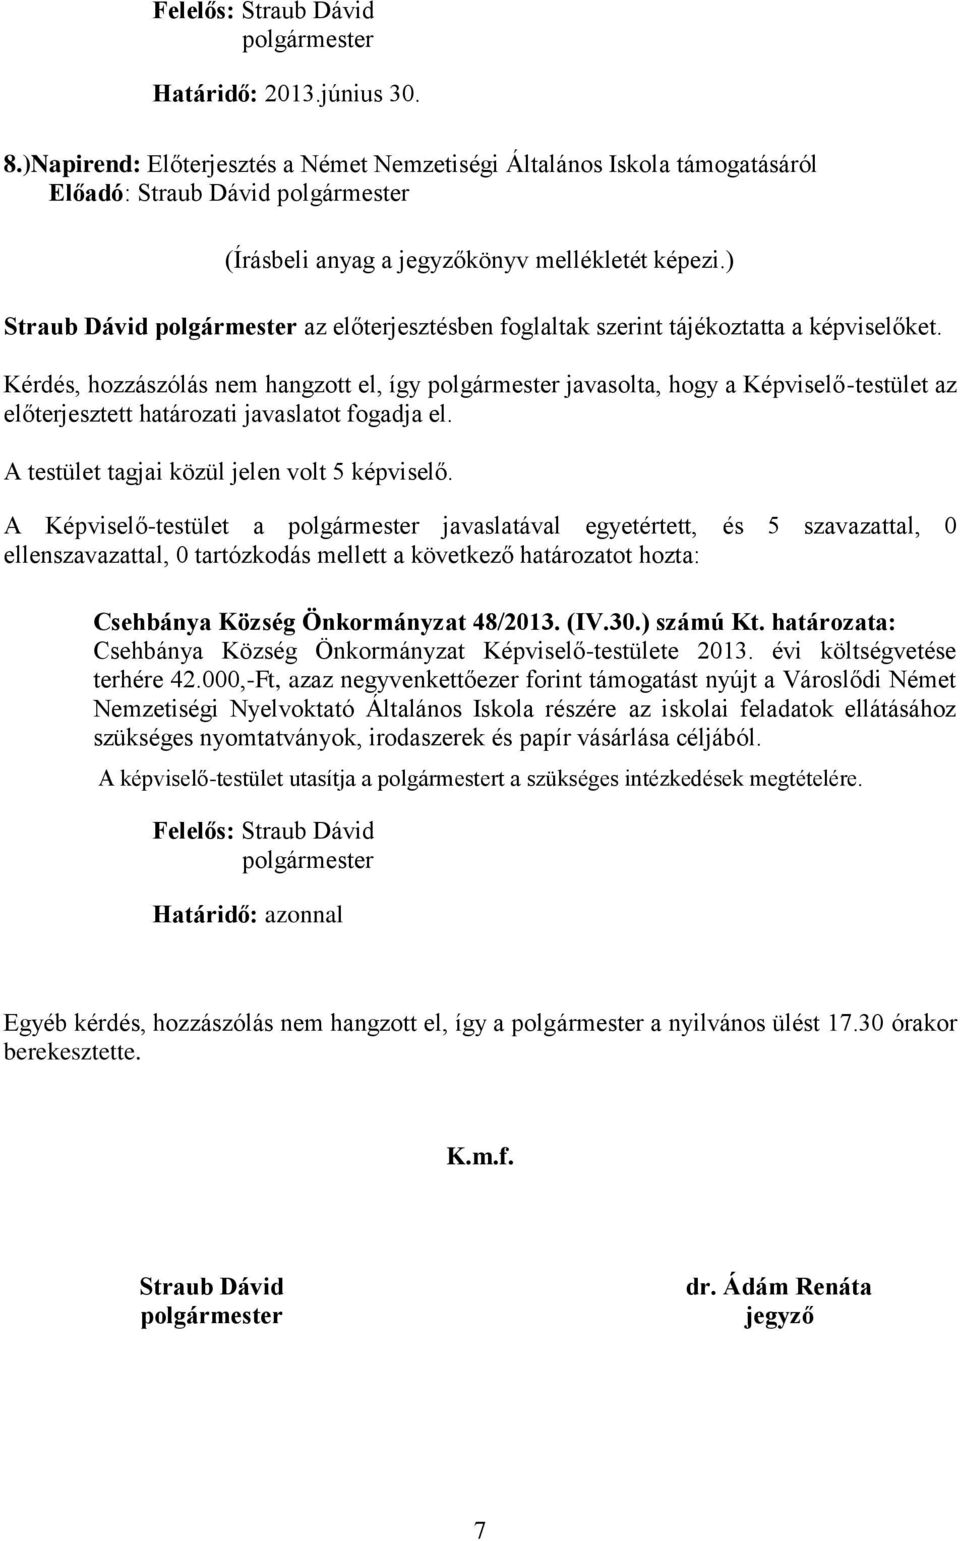 egyetértett, és 5 szavazattal, 0 Csehbánya Község Önkormányzat 48/2013. (IV.30.) számú Kt. határozata: Csehbánya Község Önkormányzat Képviselő-testülete 2013. évi költségvetése terhére 42.